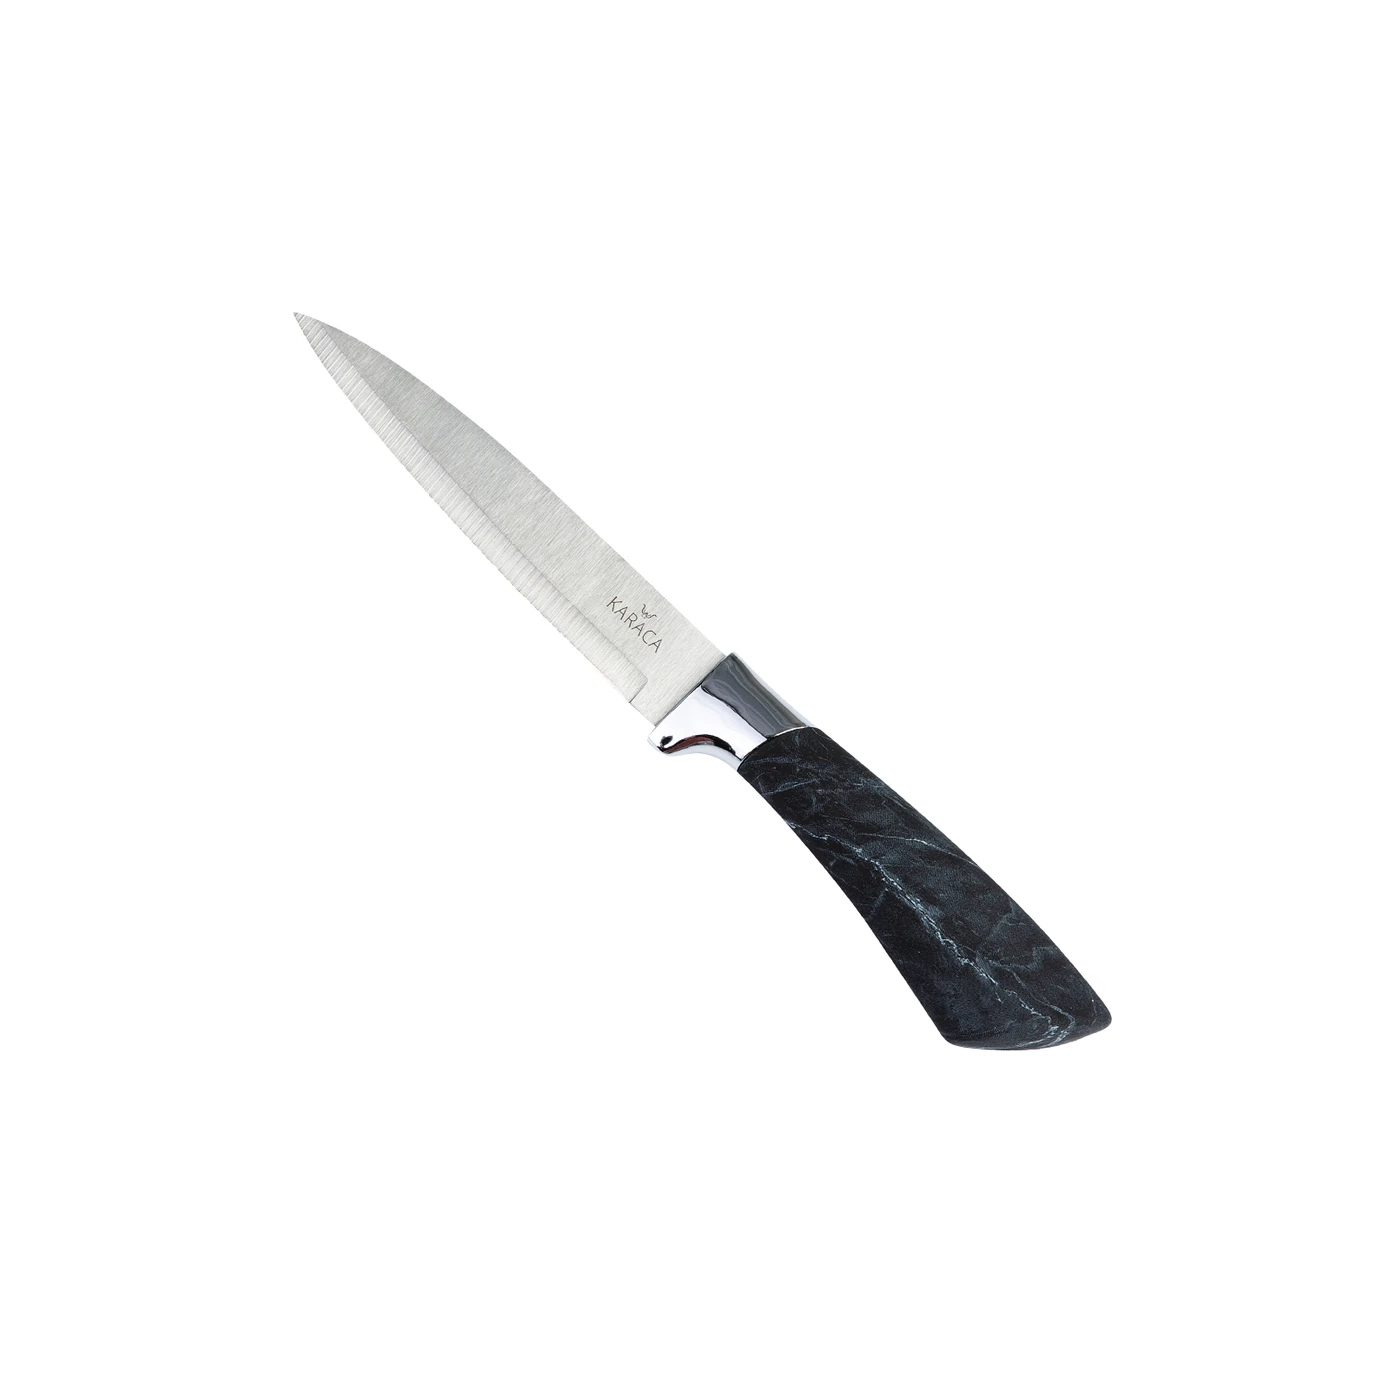 سرویس چاقو 6 پارچه کاراجا مدل ماربل